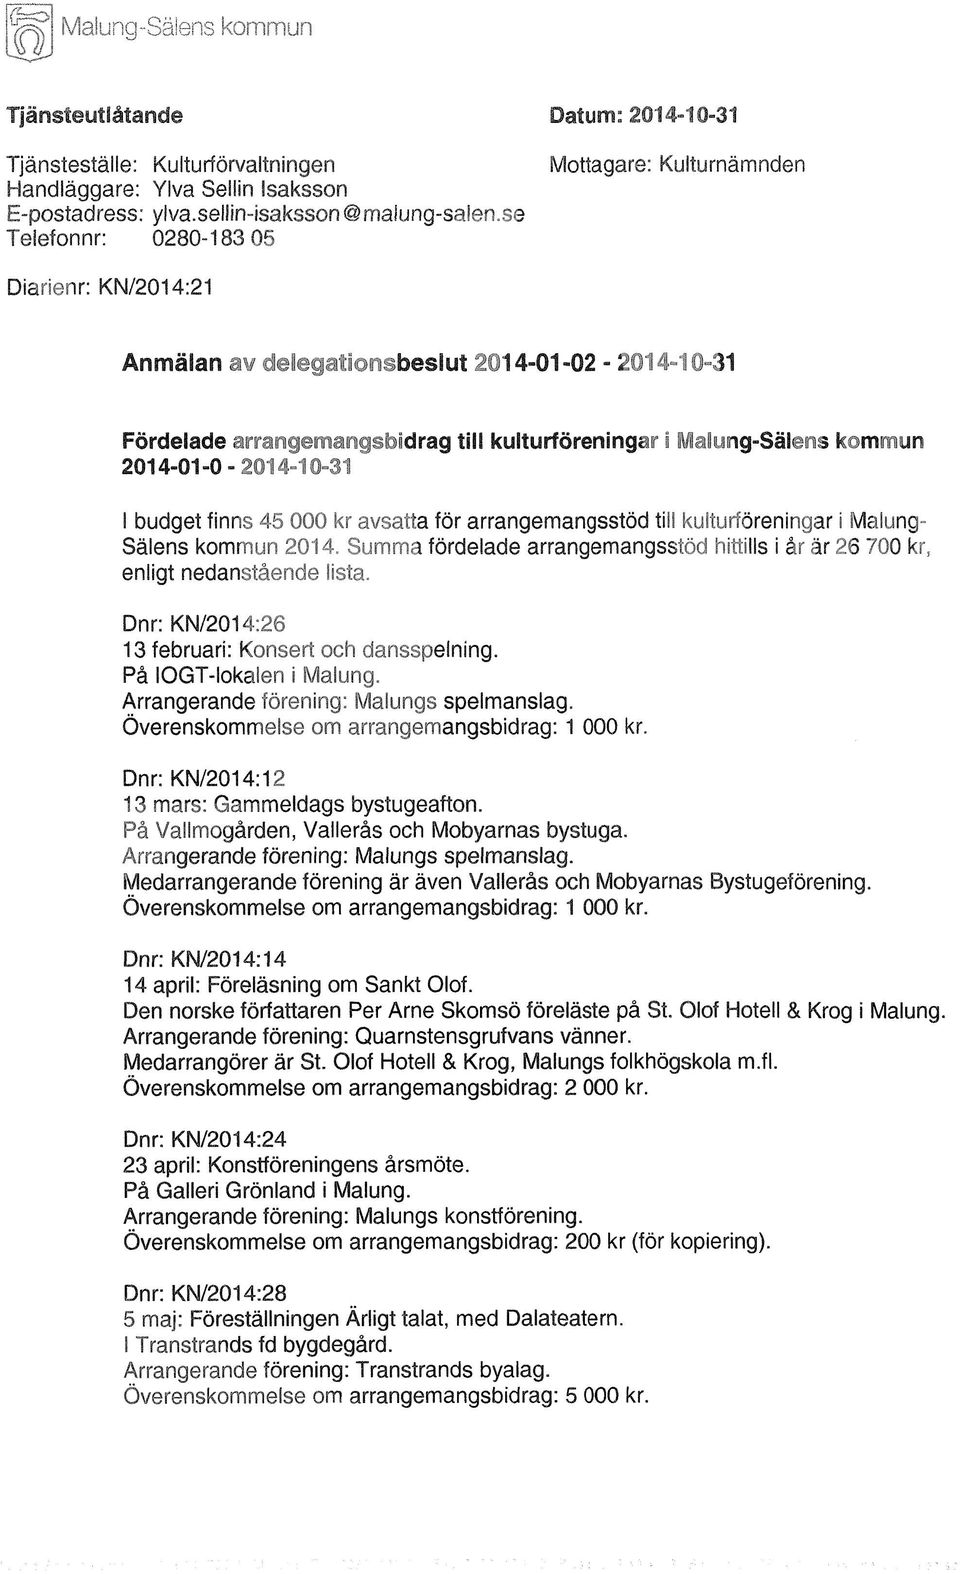 2014-01-0-2014-10-31 I budget finns 45 000 kr avsatta för arrangemangsstöd till kulturföreningar i Malung- Sälens kommun 2014.